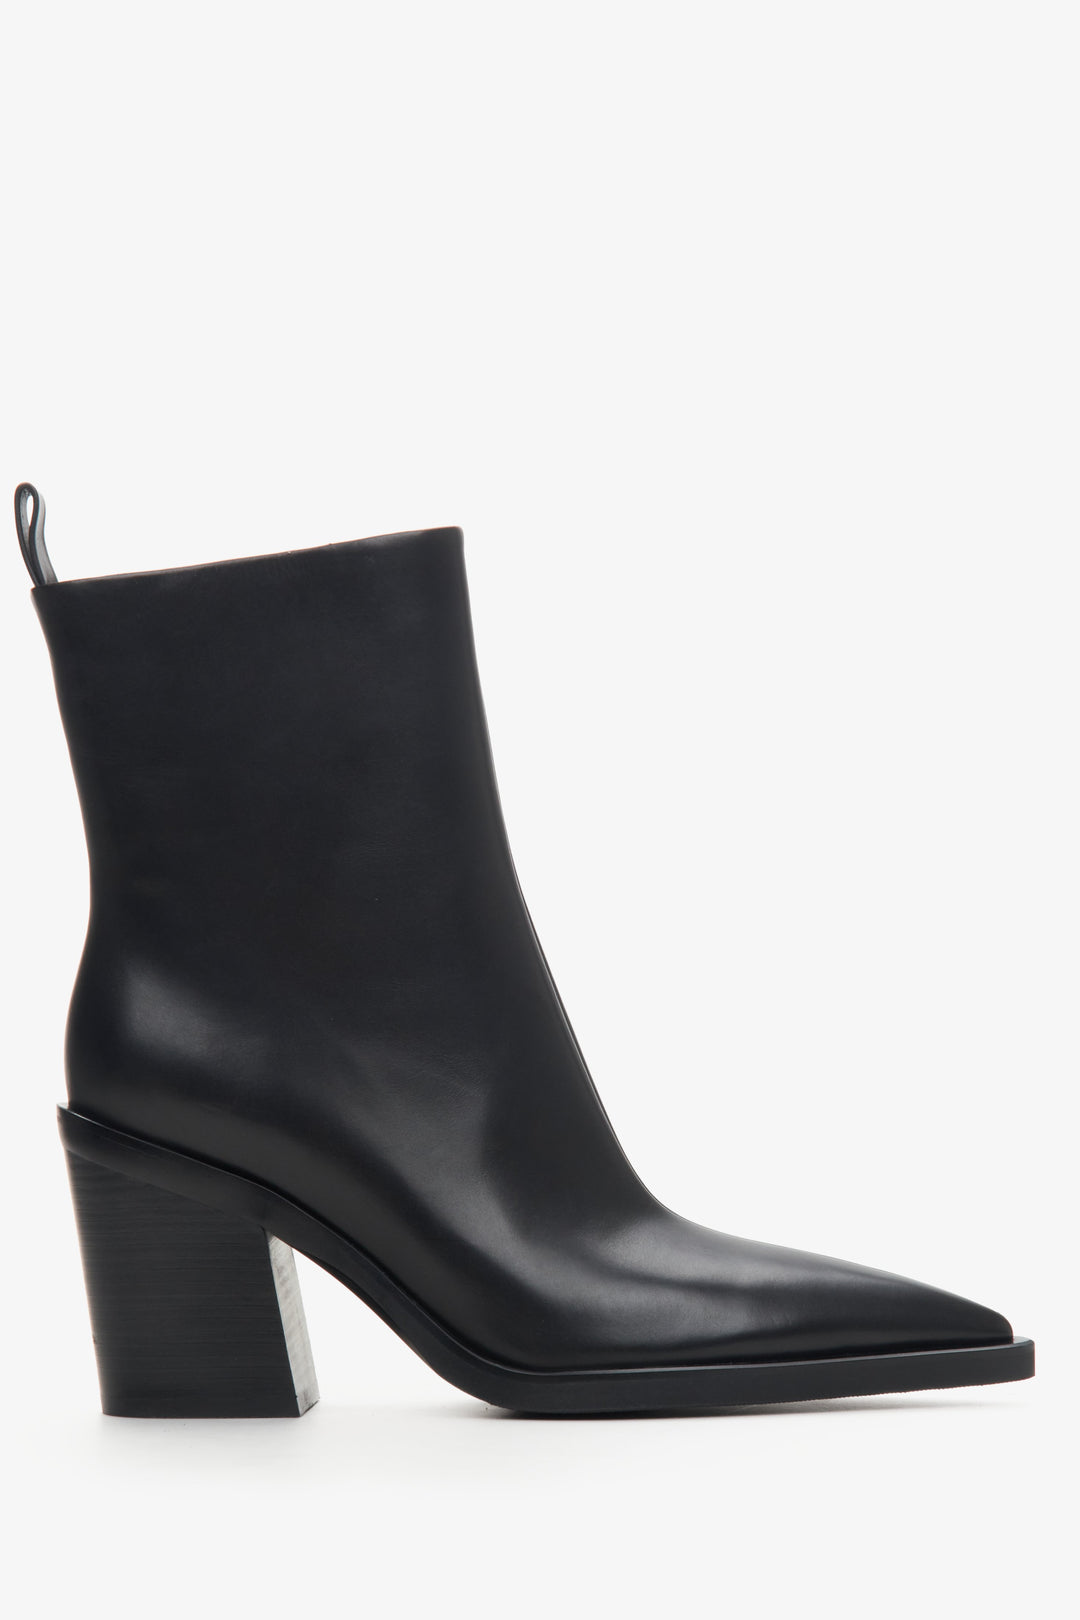 Women's black leather cowboy boots - shoe profile.